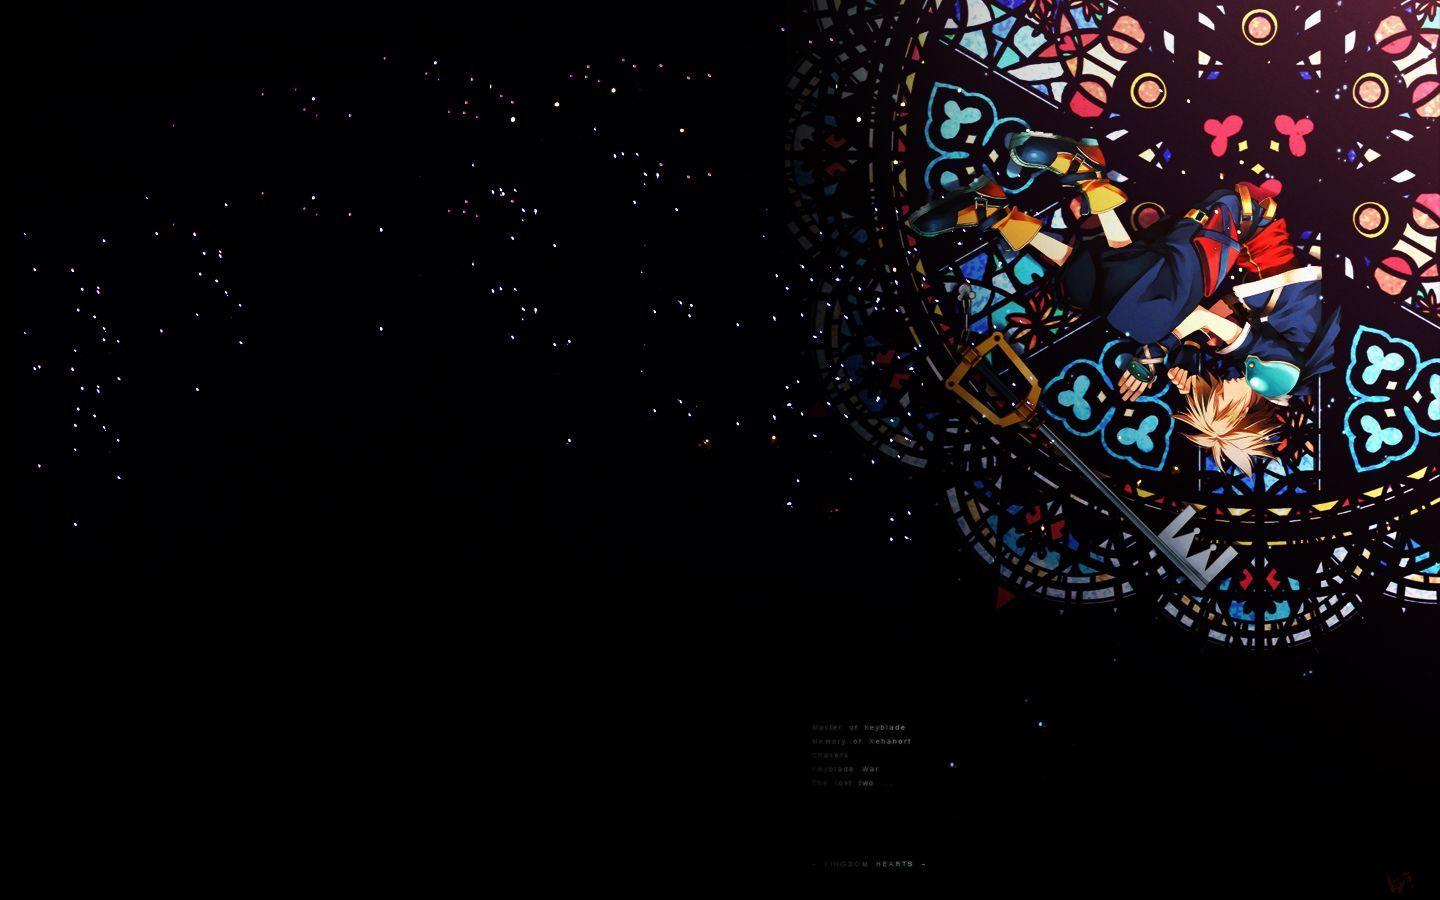 Kingdom Hearts Sora Wallpaper HD For Desktop Wallpaper 1440 x 900